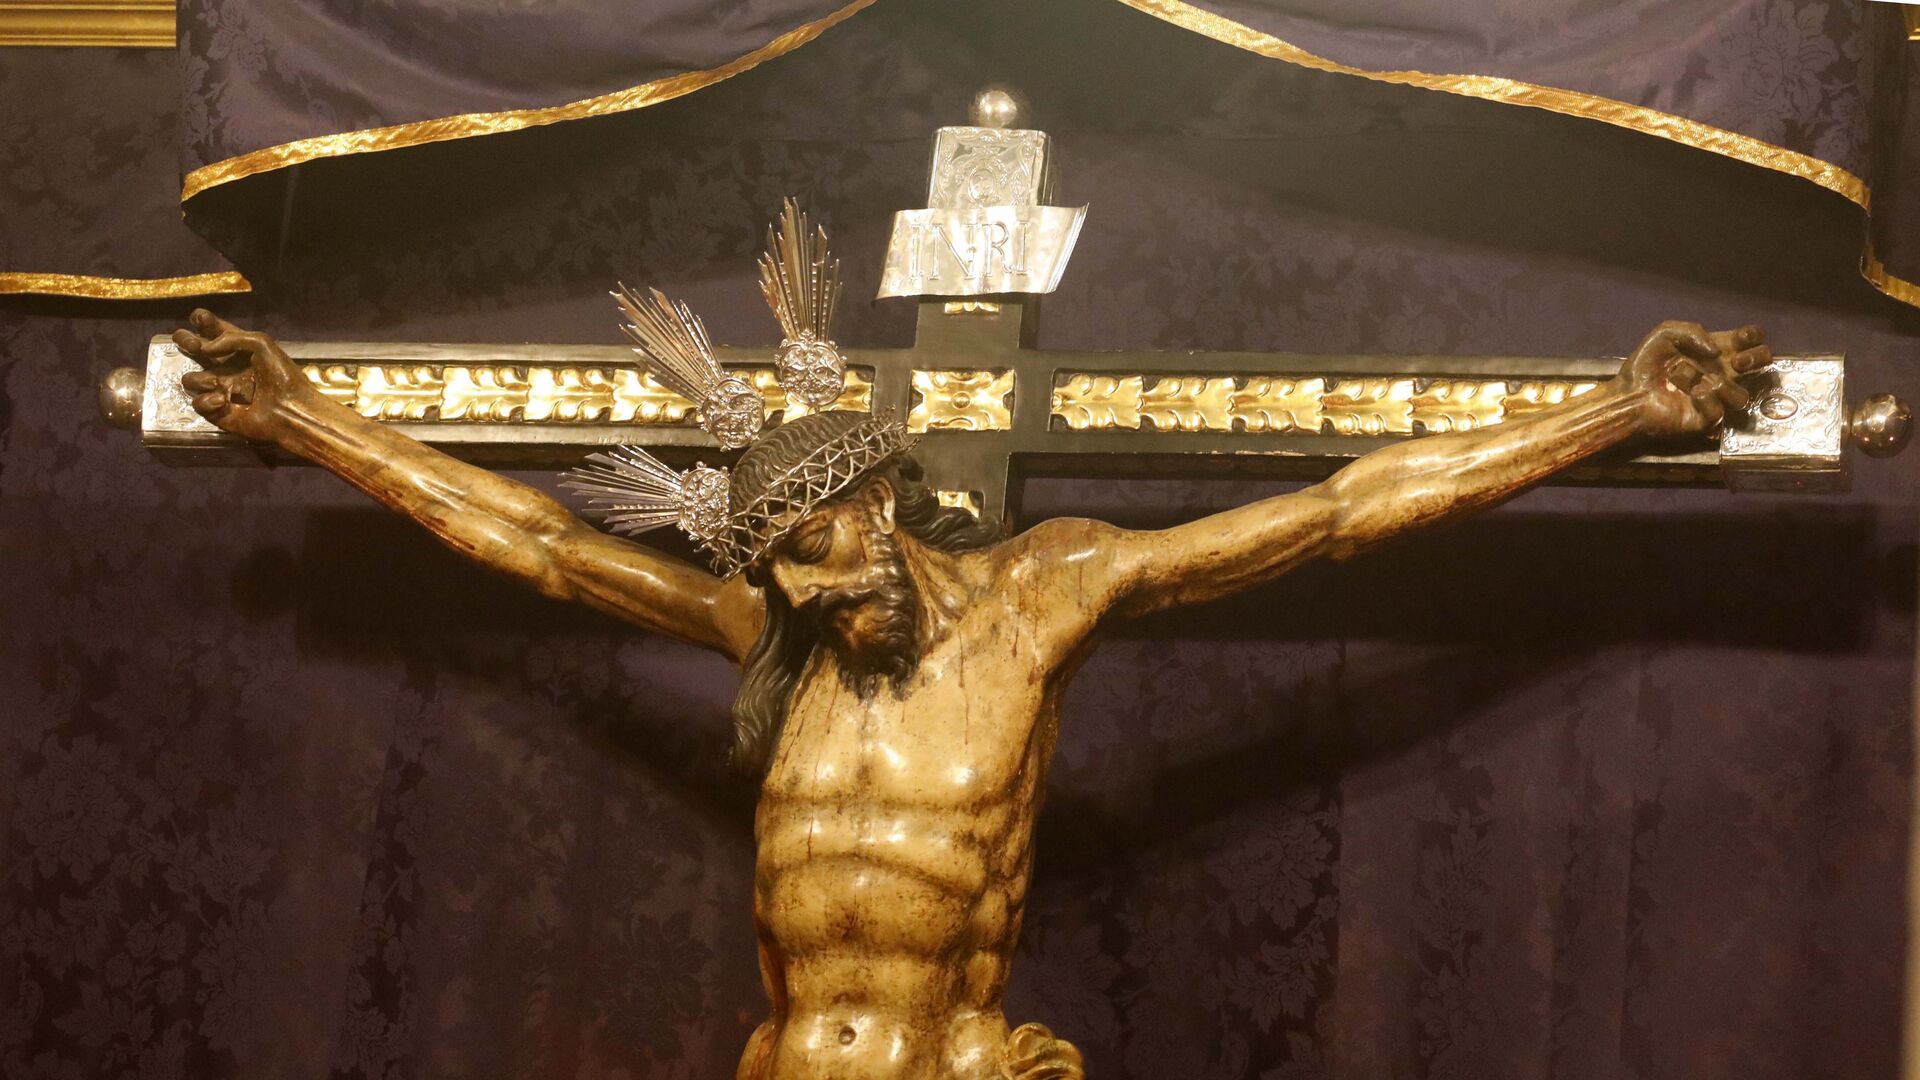 Fotos del Miercoles Santo en Tarifa:  Cristo del Consuelo y Nuestra Se&ntilde;ora de las L&aacute;grimas